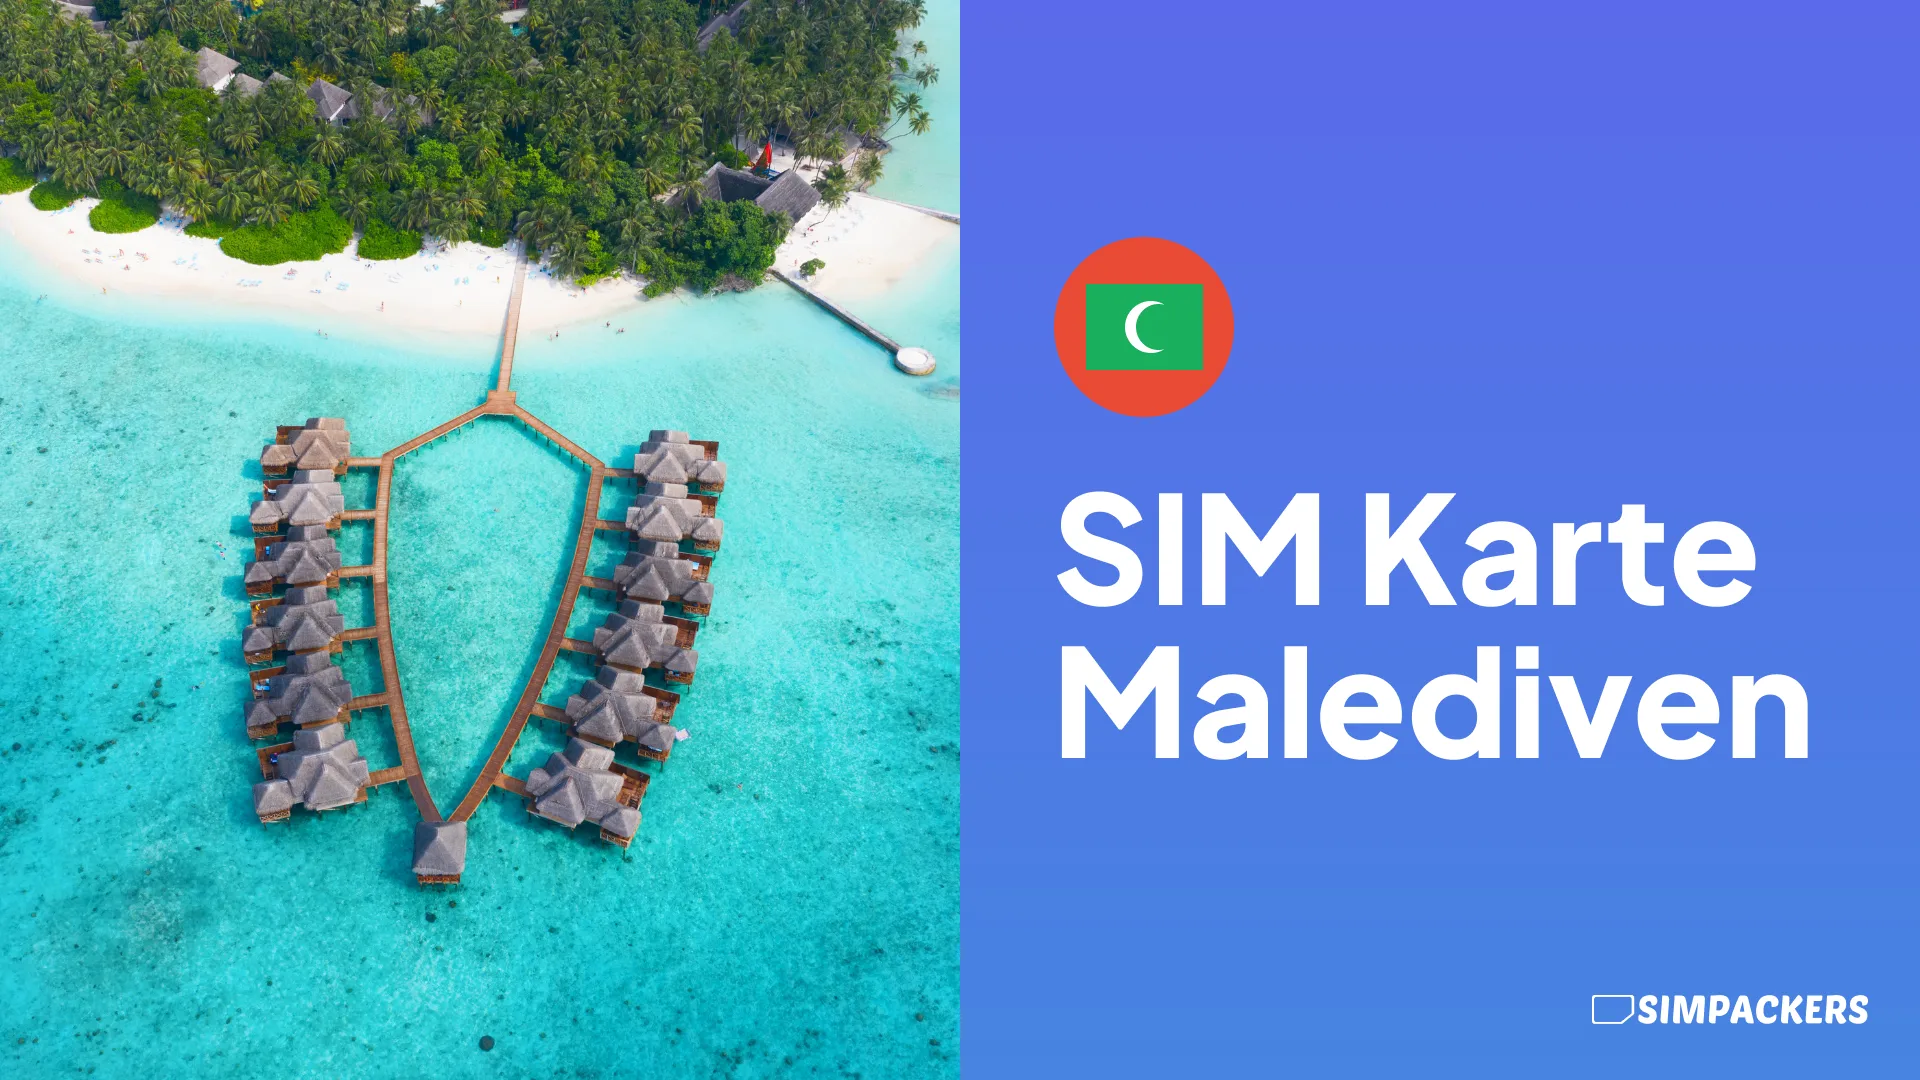 DE/FEATURED_IMAGES/sim-karte-malediven.webp